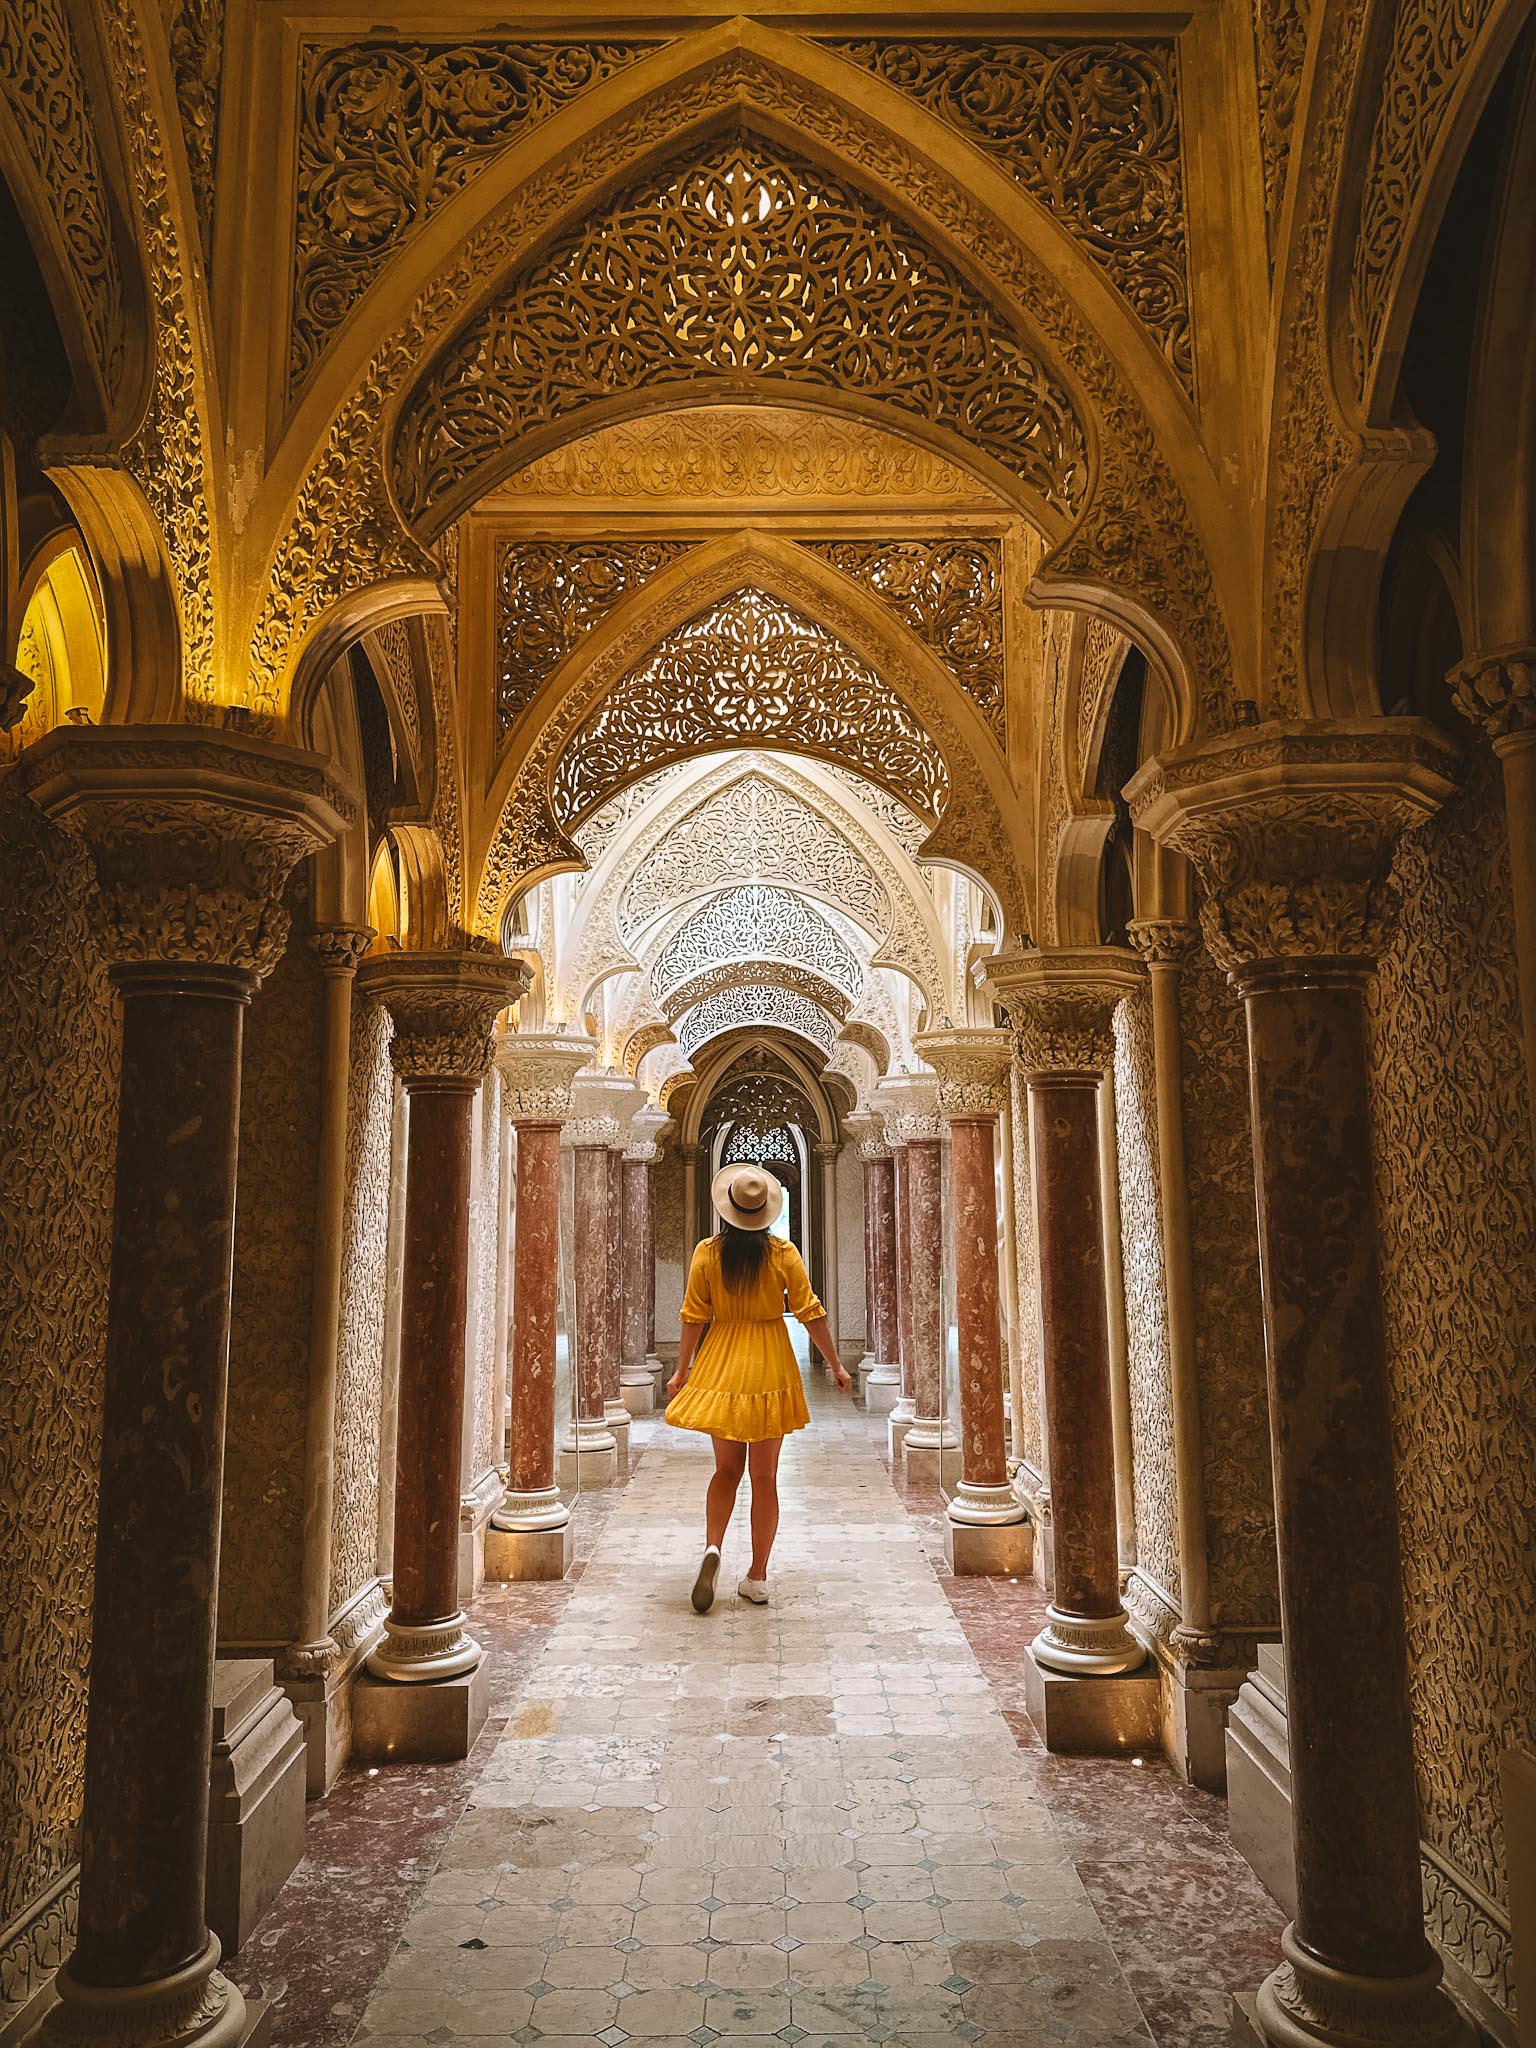 Monserrate Palace in Sintra, Portugal - best Instagram spots in Sintra